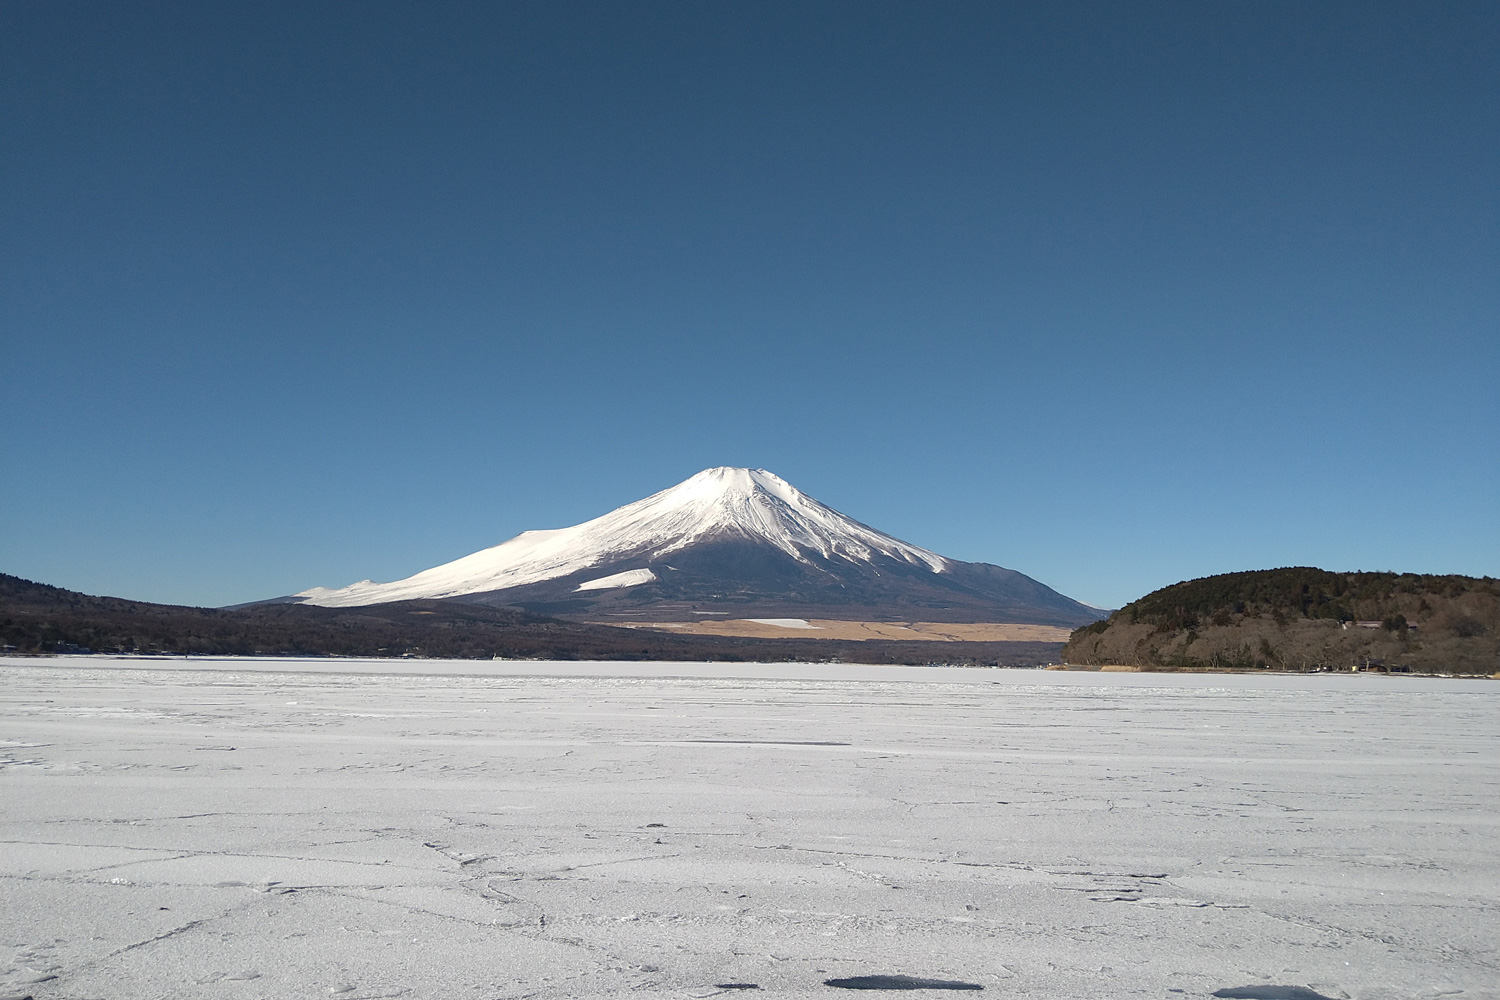 冬の富士山シーン